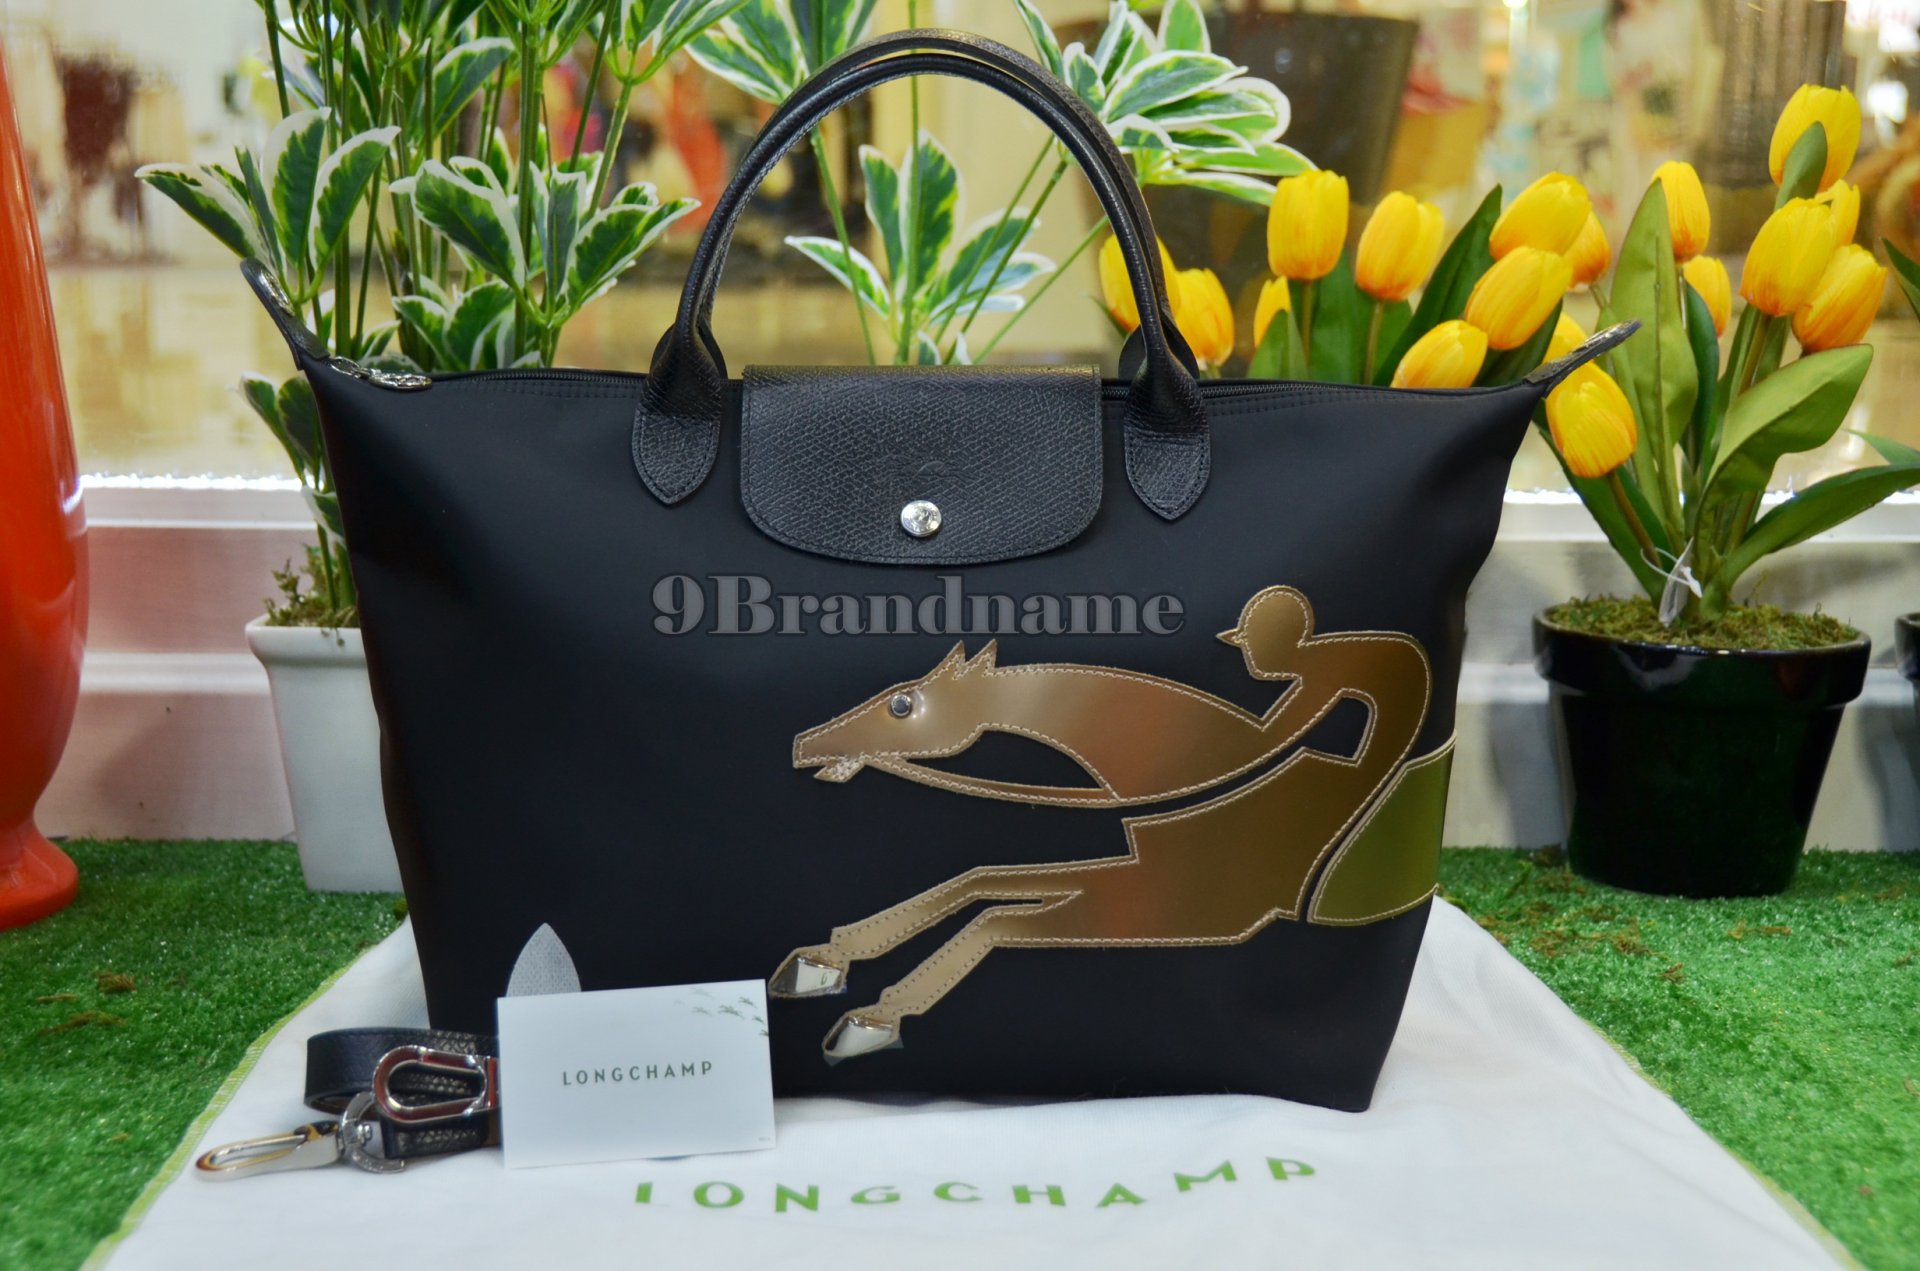 Longchamp With Strap Limited - Authentic Bag กระเป๋ารุ่นนิยม วัยรุ่นชอบถือ ลิมิแต็ด มีสายสะพายยาว สวยมากค่ะ